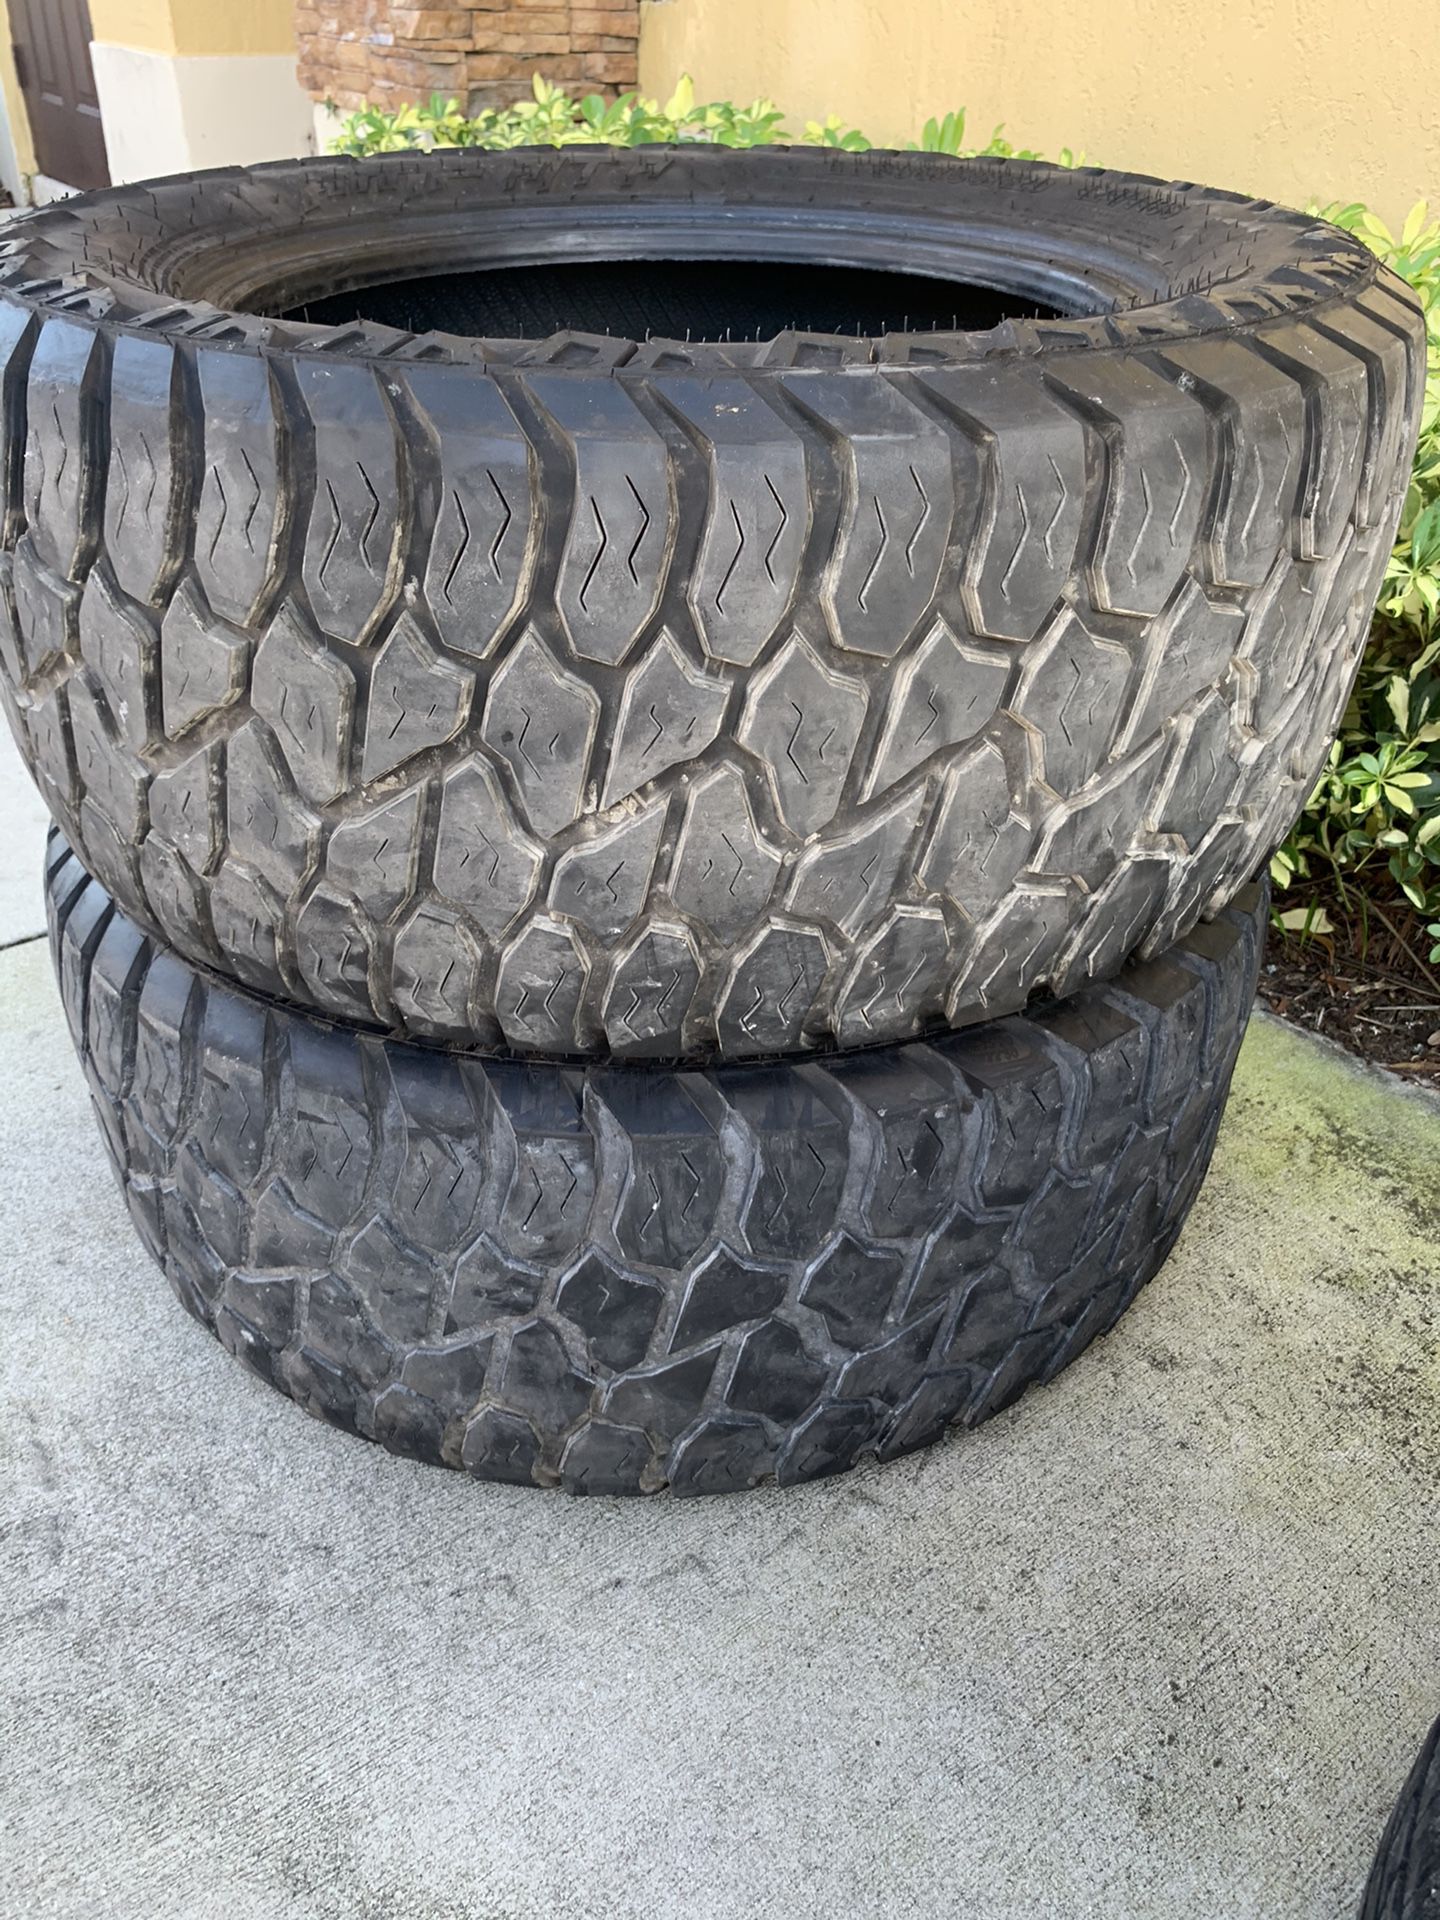 Terrain Attack tires